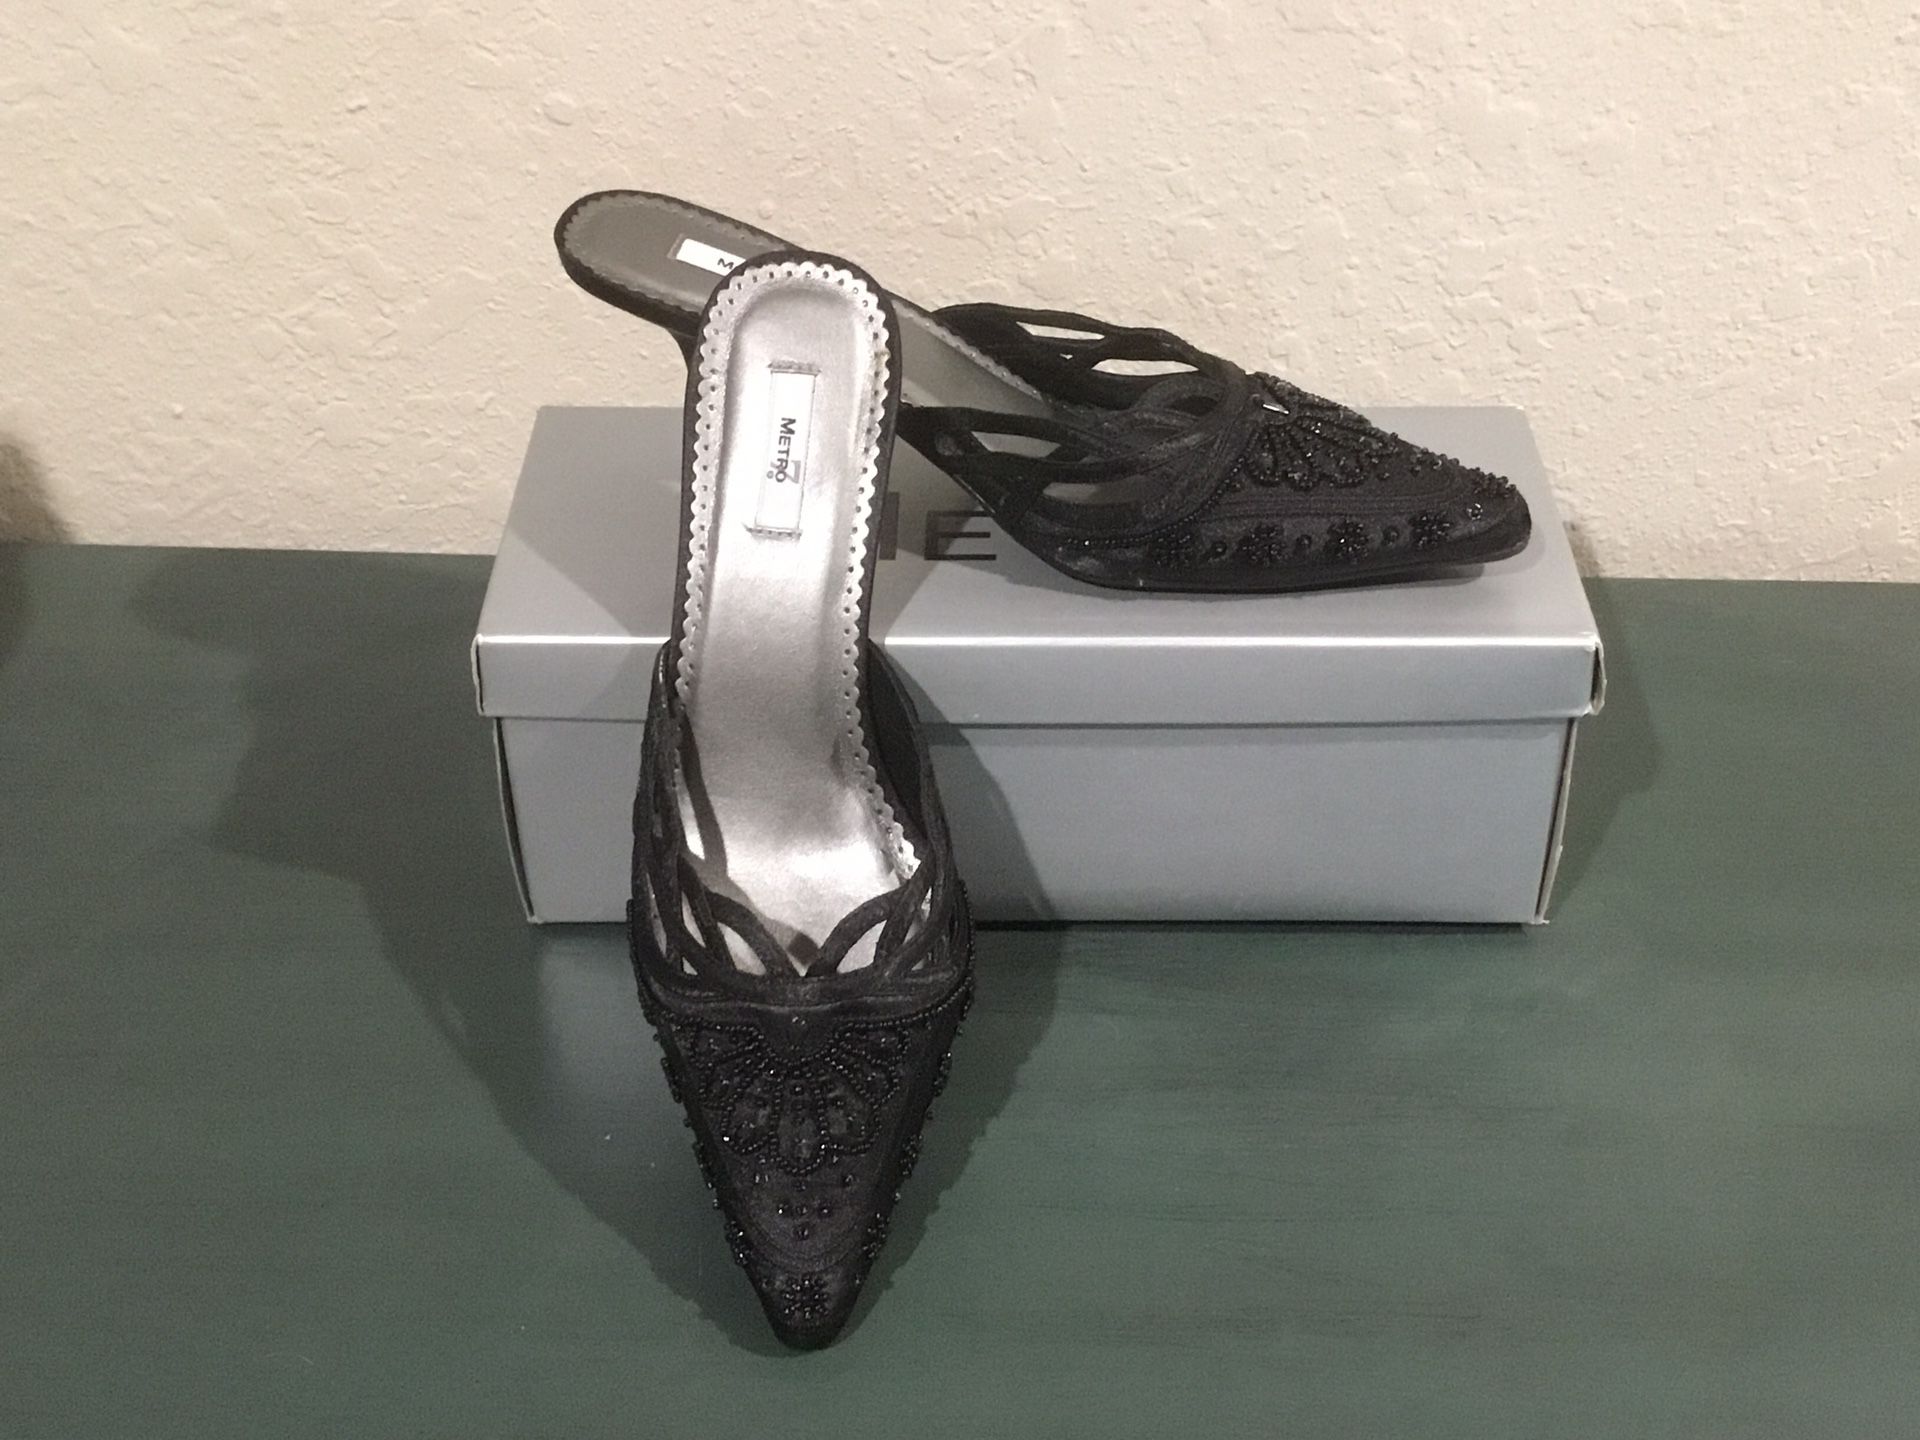 Women’s Size 8 Elegant Beaded Slide Shoe